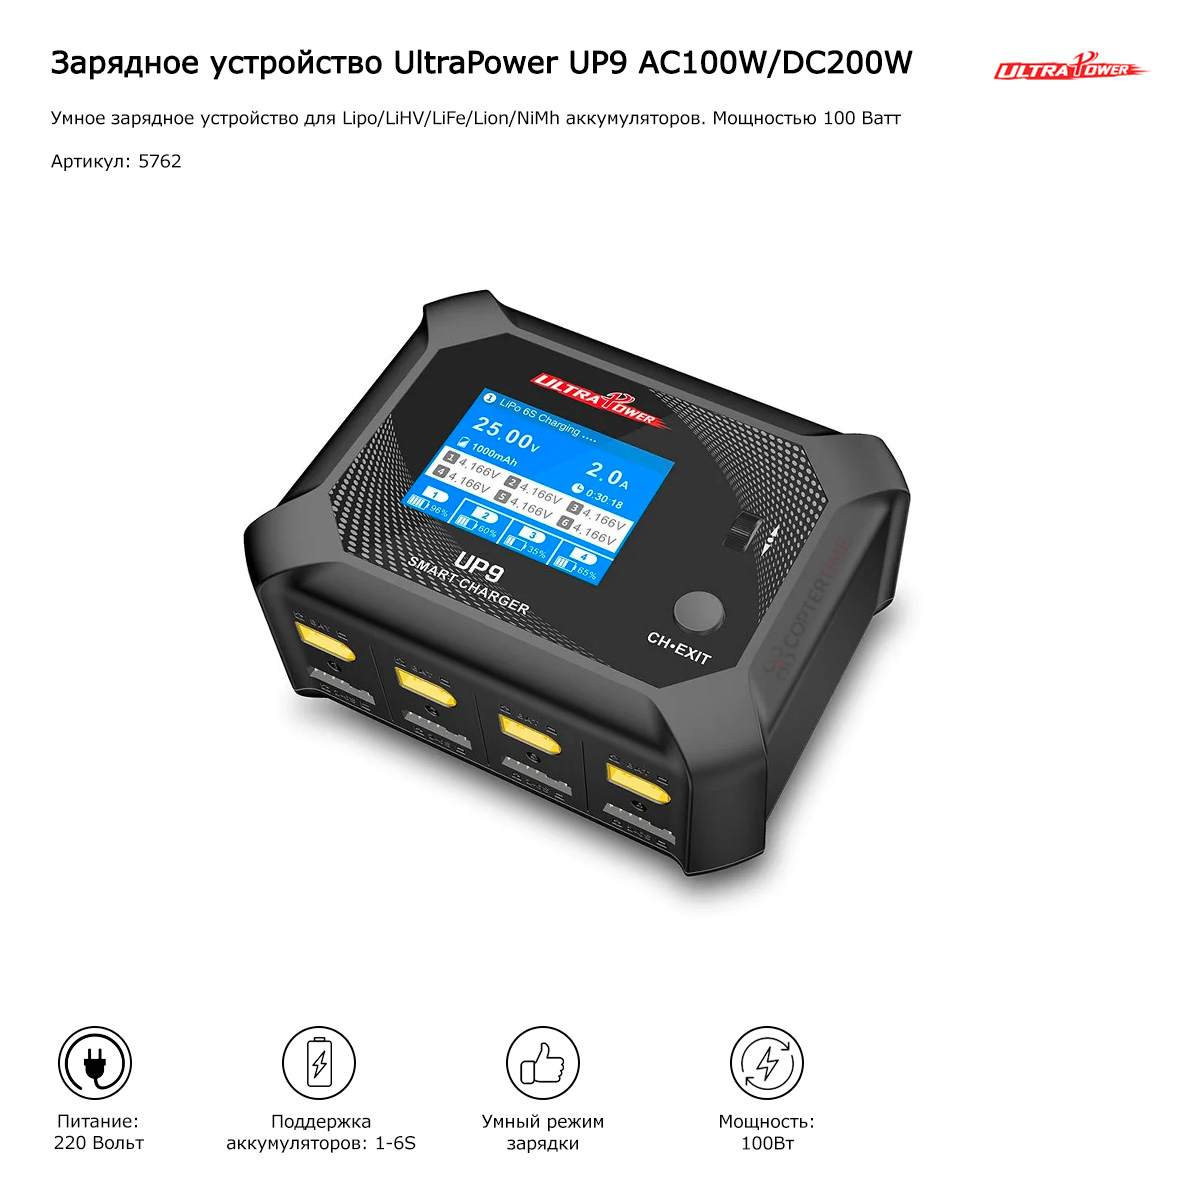 Зарядное устройство UltraPower UP9 AC100W/DC200W